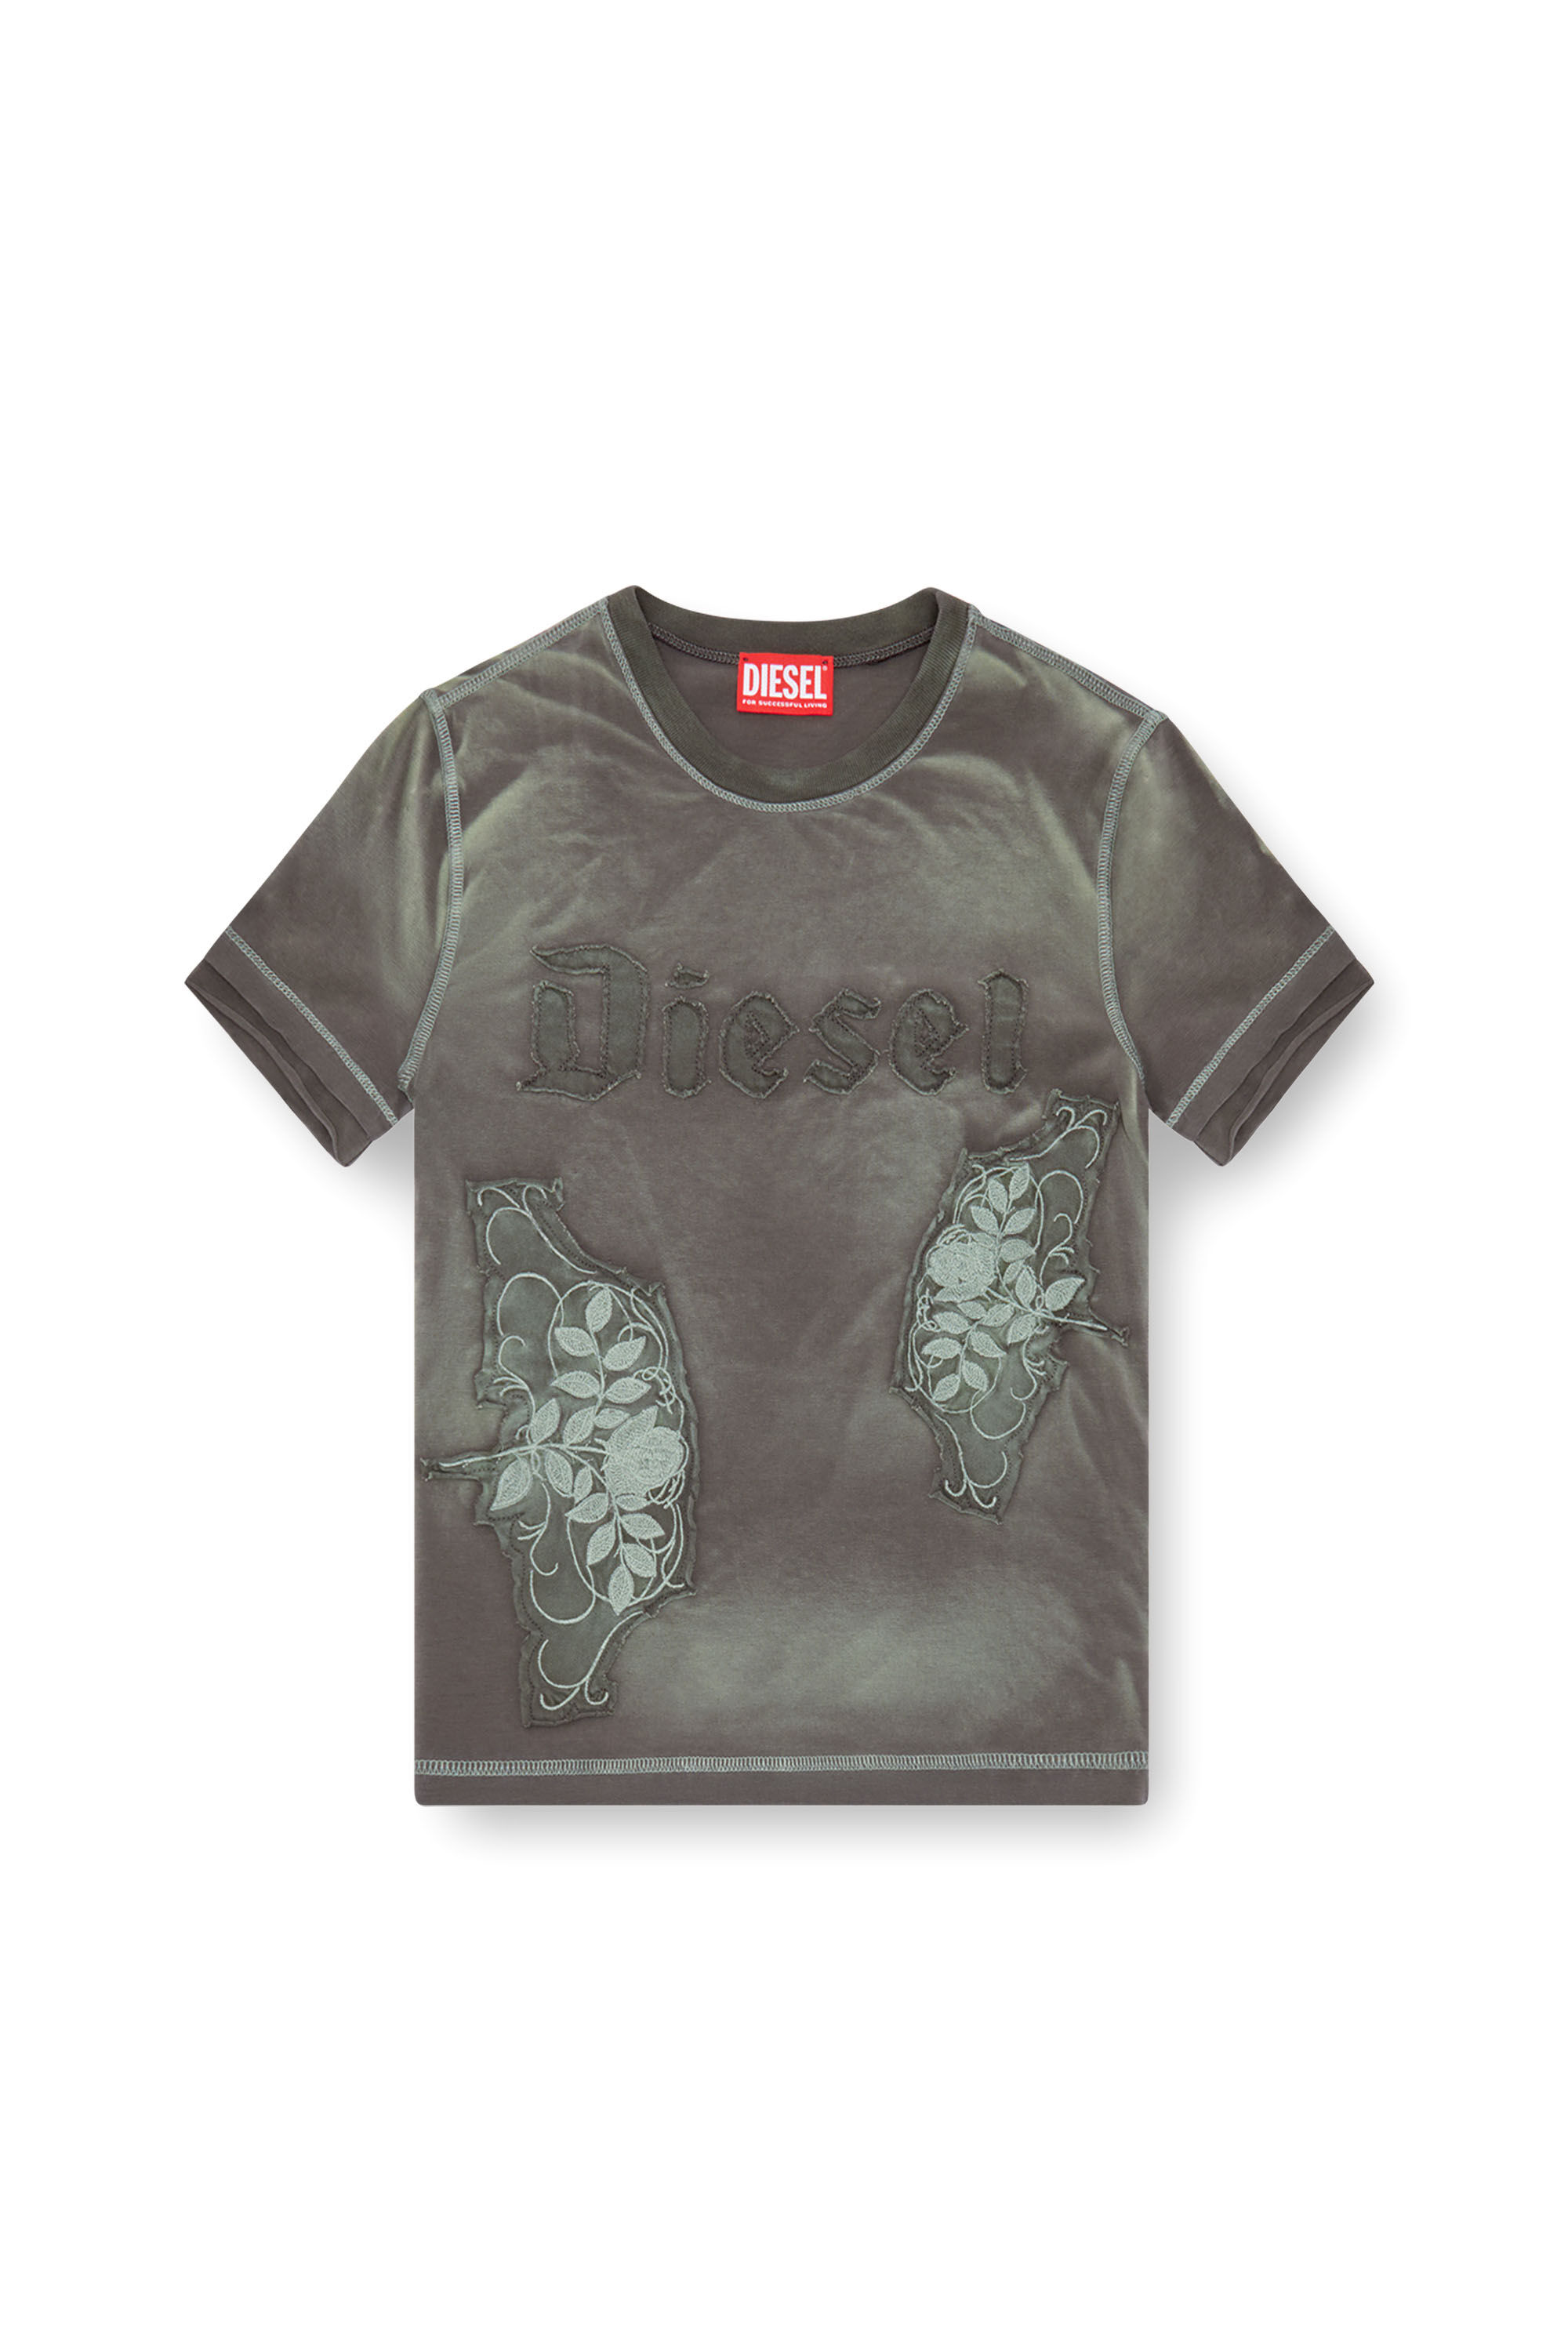 Diesel - T-UNCUT, Femme T-shirt avec empiècements fleuris brodés in Vert - Image 2